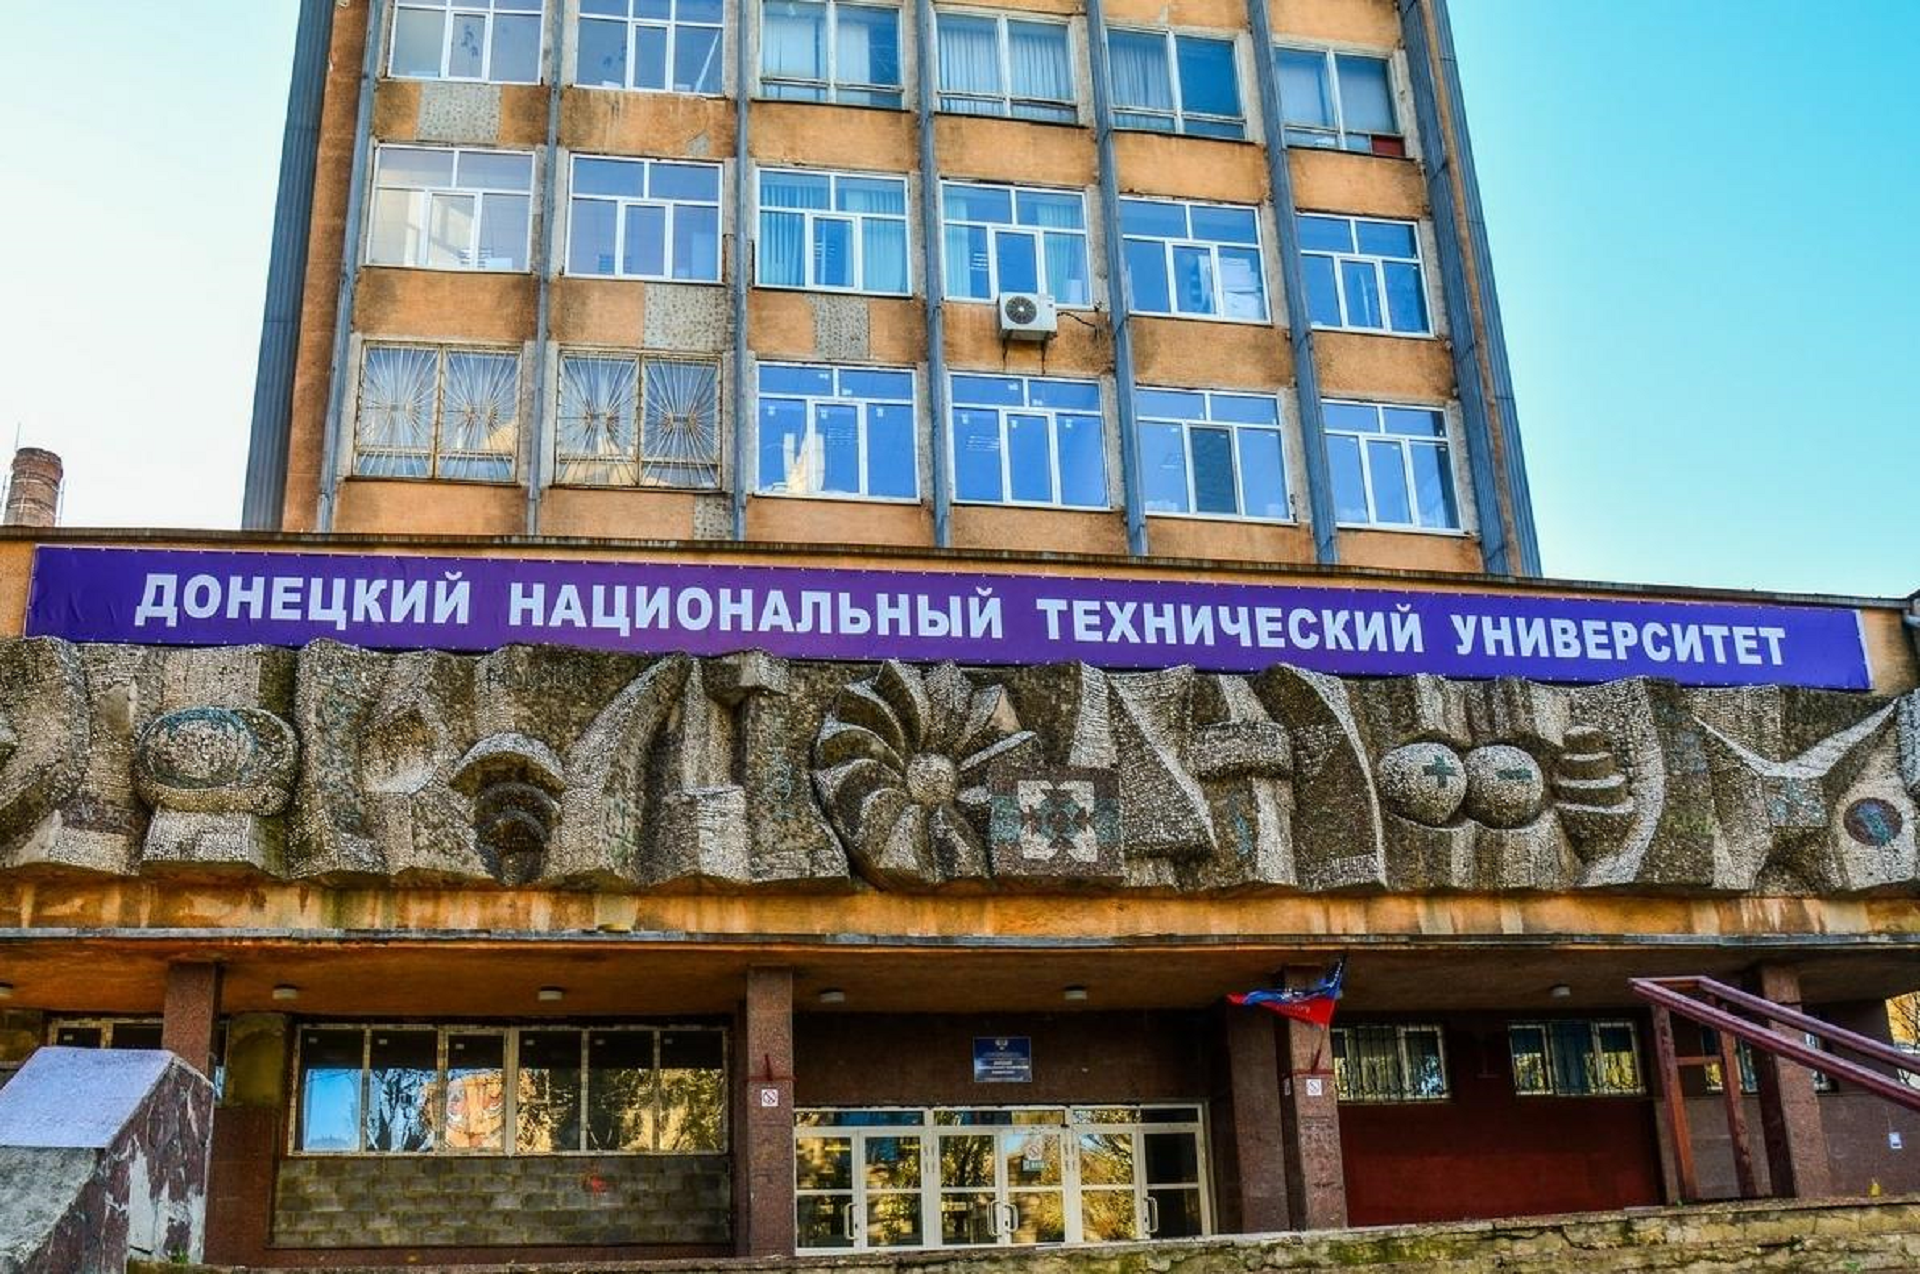 Донецкий национальный технический университет поздравил ВятГУ с юбилеем